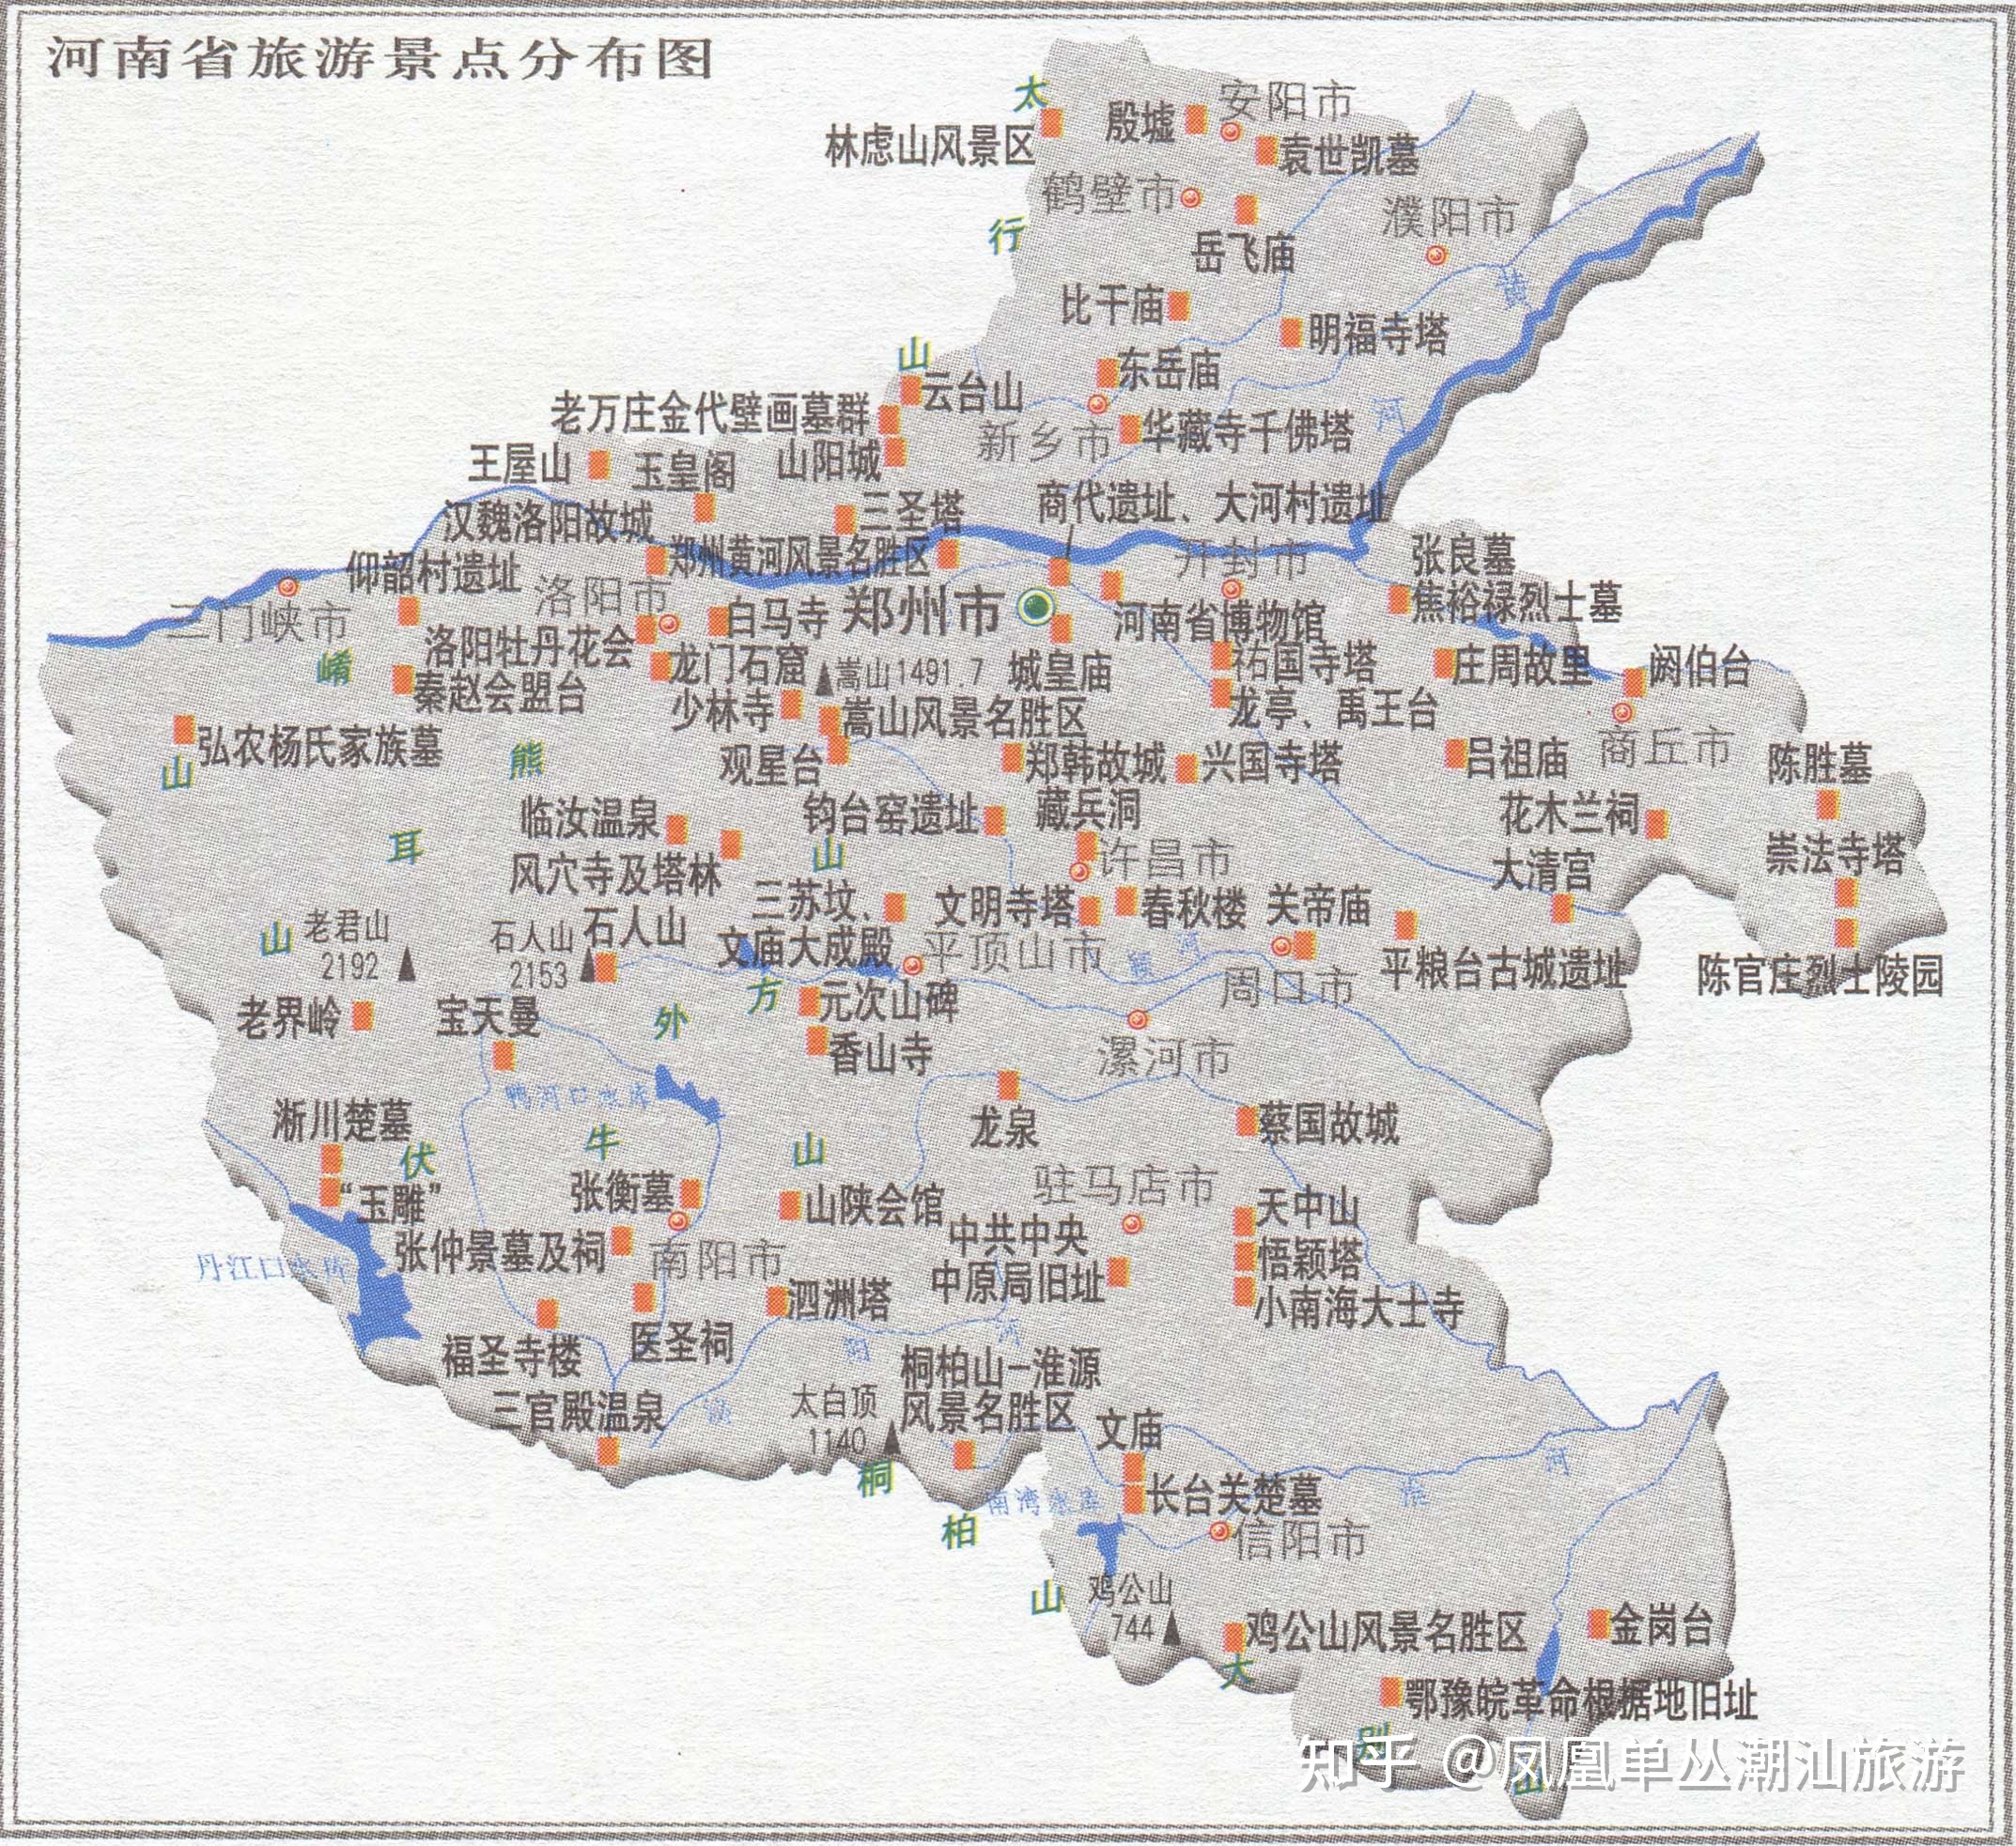 中国最美旅游景点高清地图(汇聚3000多个景点,可下载收藏  